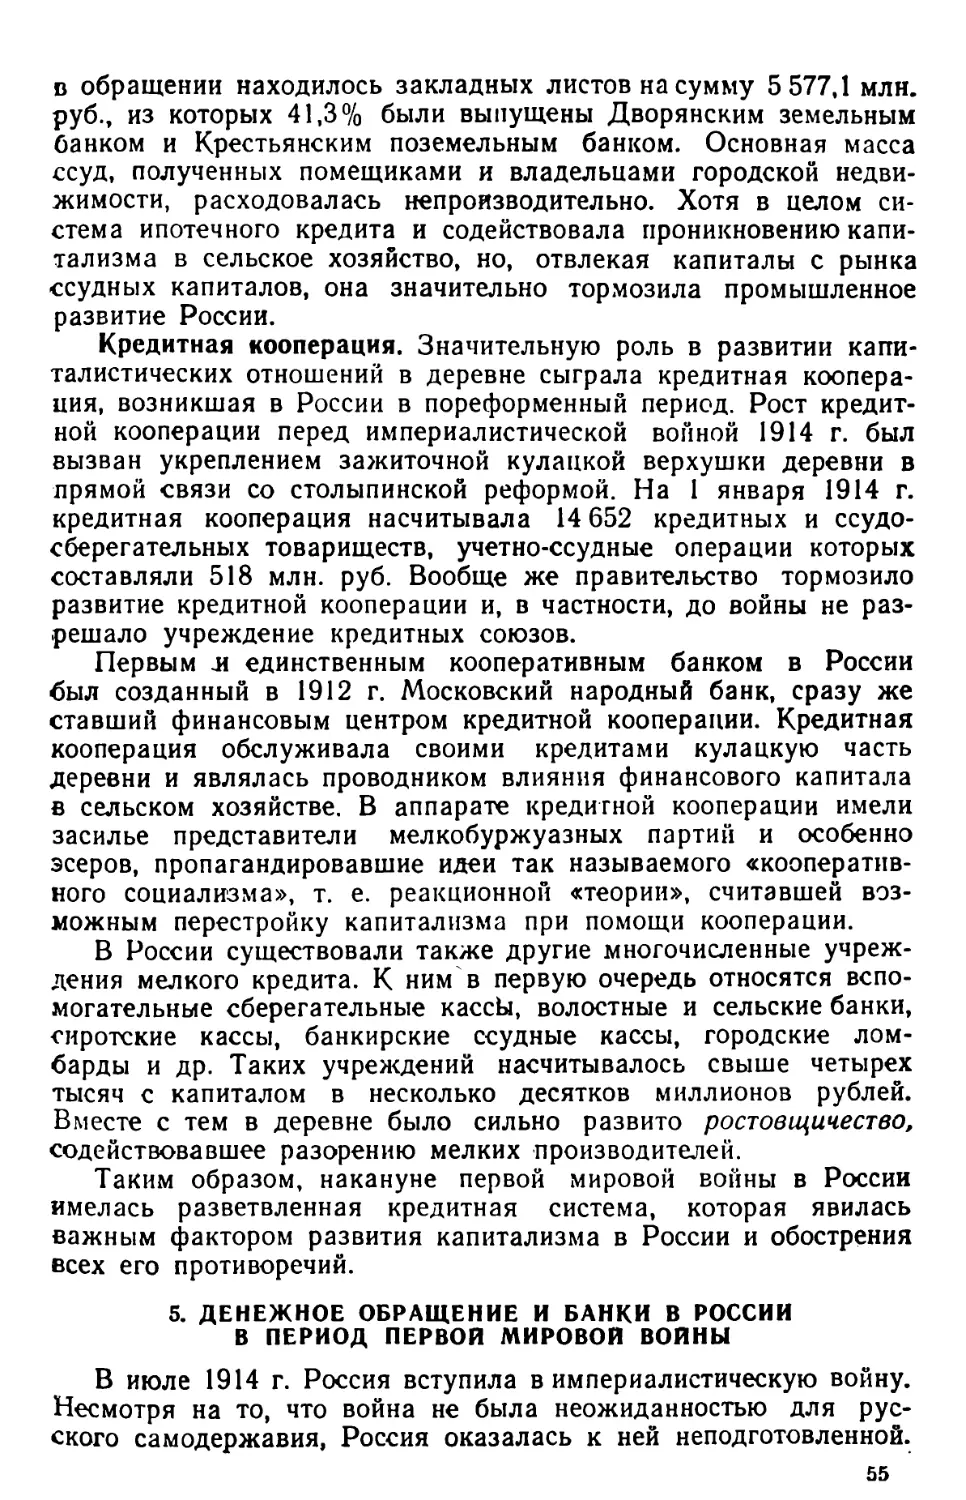 5. Денежное обращение и банки в России в период первой мировой войны